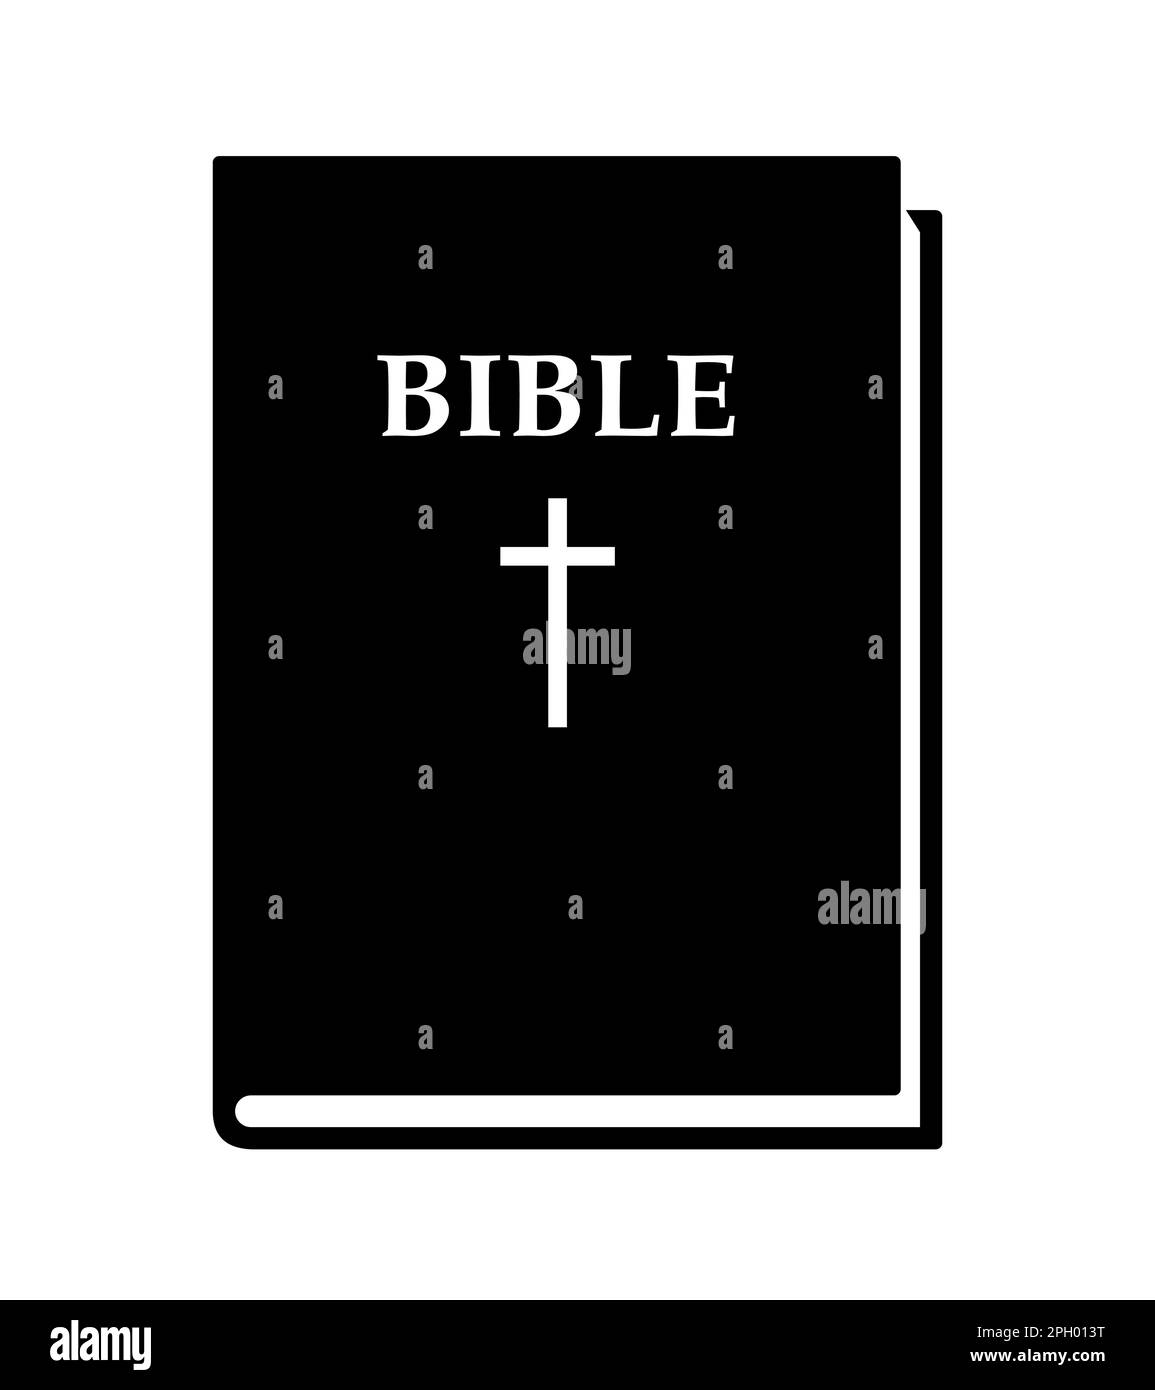 Heilige bibel - Schwarzweiß-Vektordarstellung mit geschlossenem Buch, isoliert auf Weiß Stock Vektor